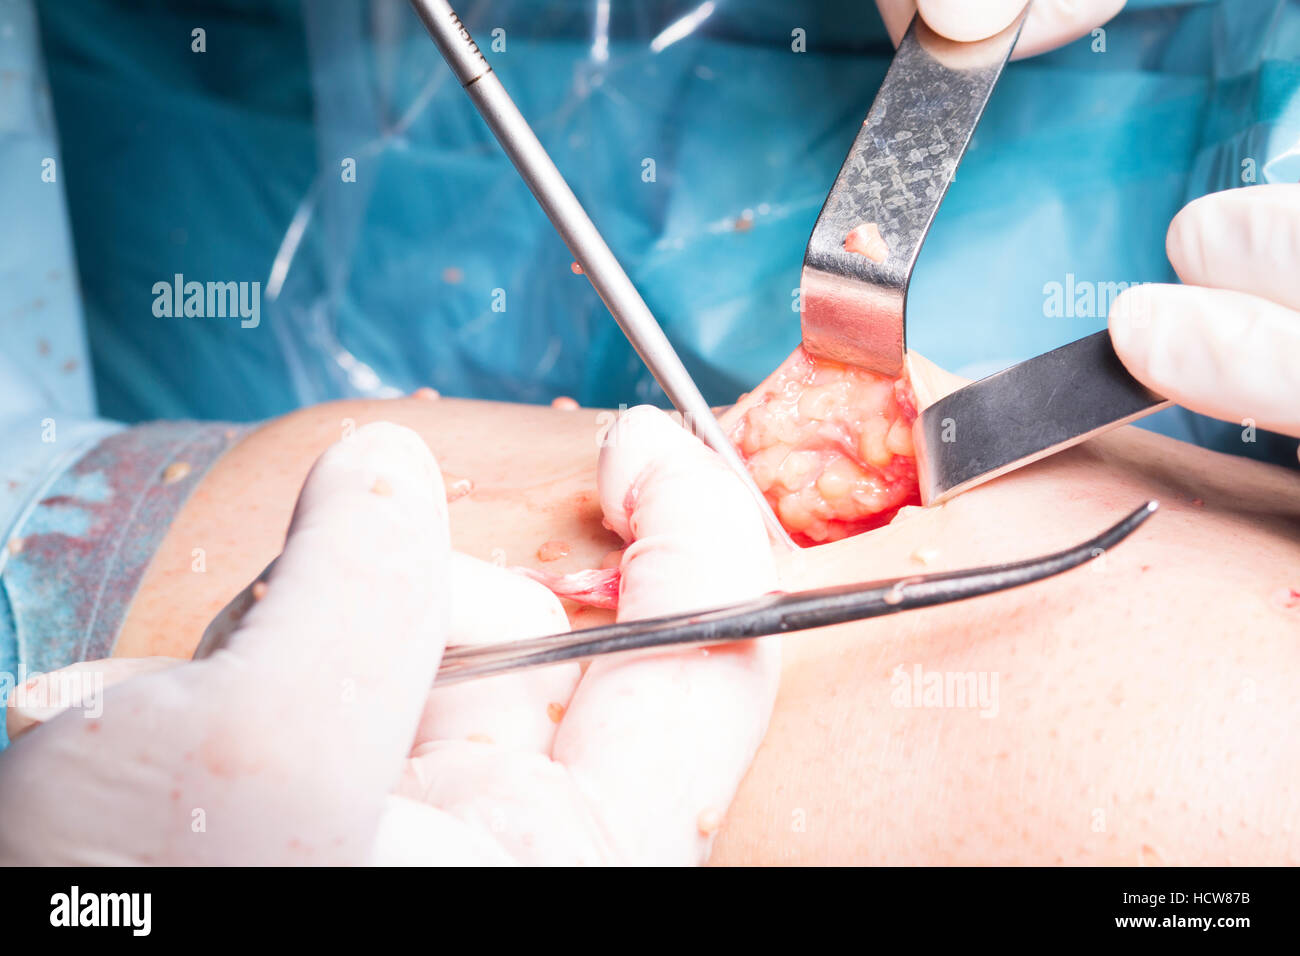 Opération chirurgicale l'arthroscopie du genou chirurgie micro sur ...